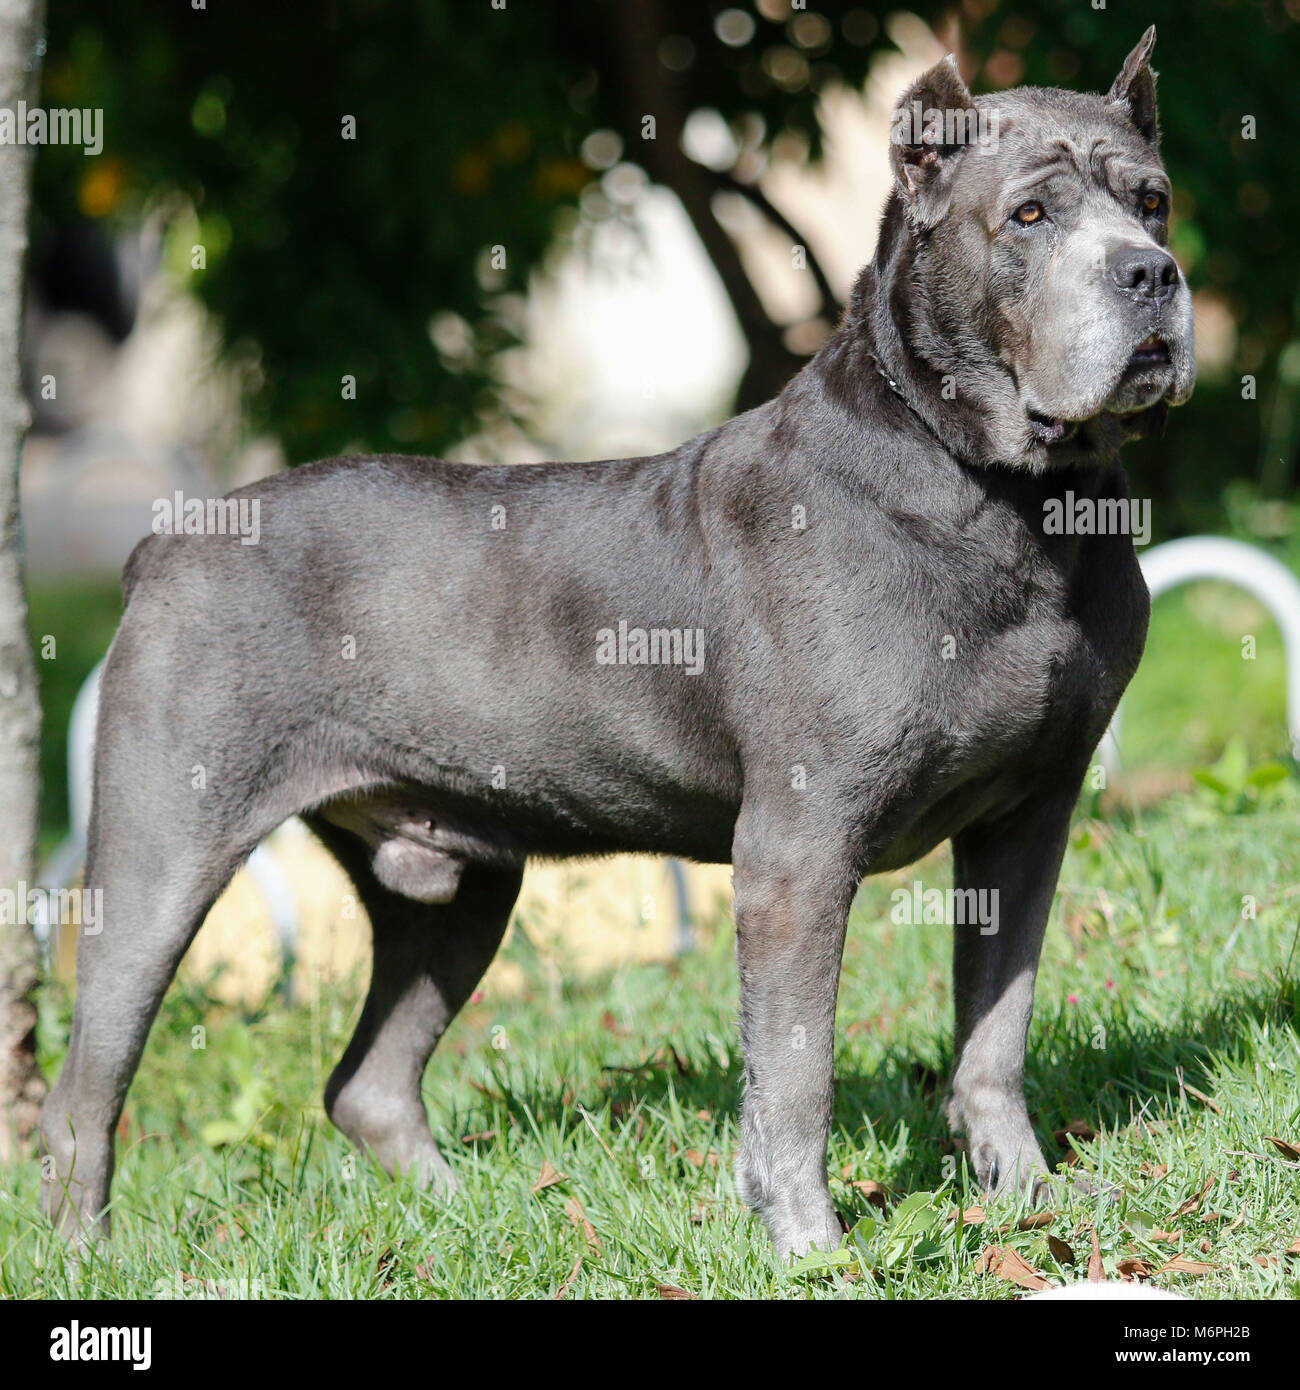 Perro de raza Corso la caña de edad adulta en pose arrogante Foto de stock